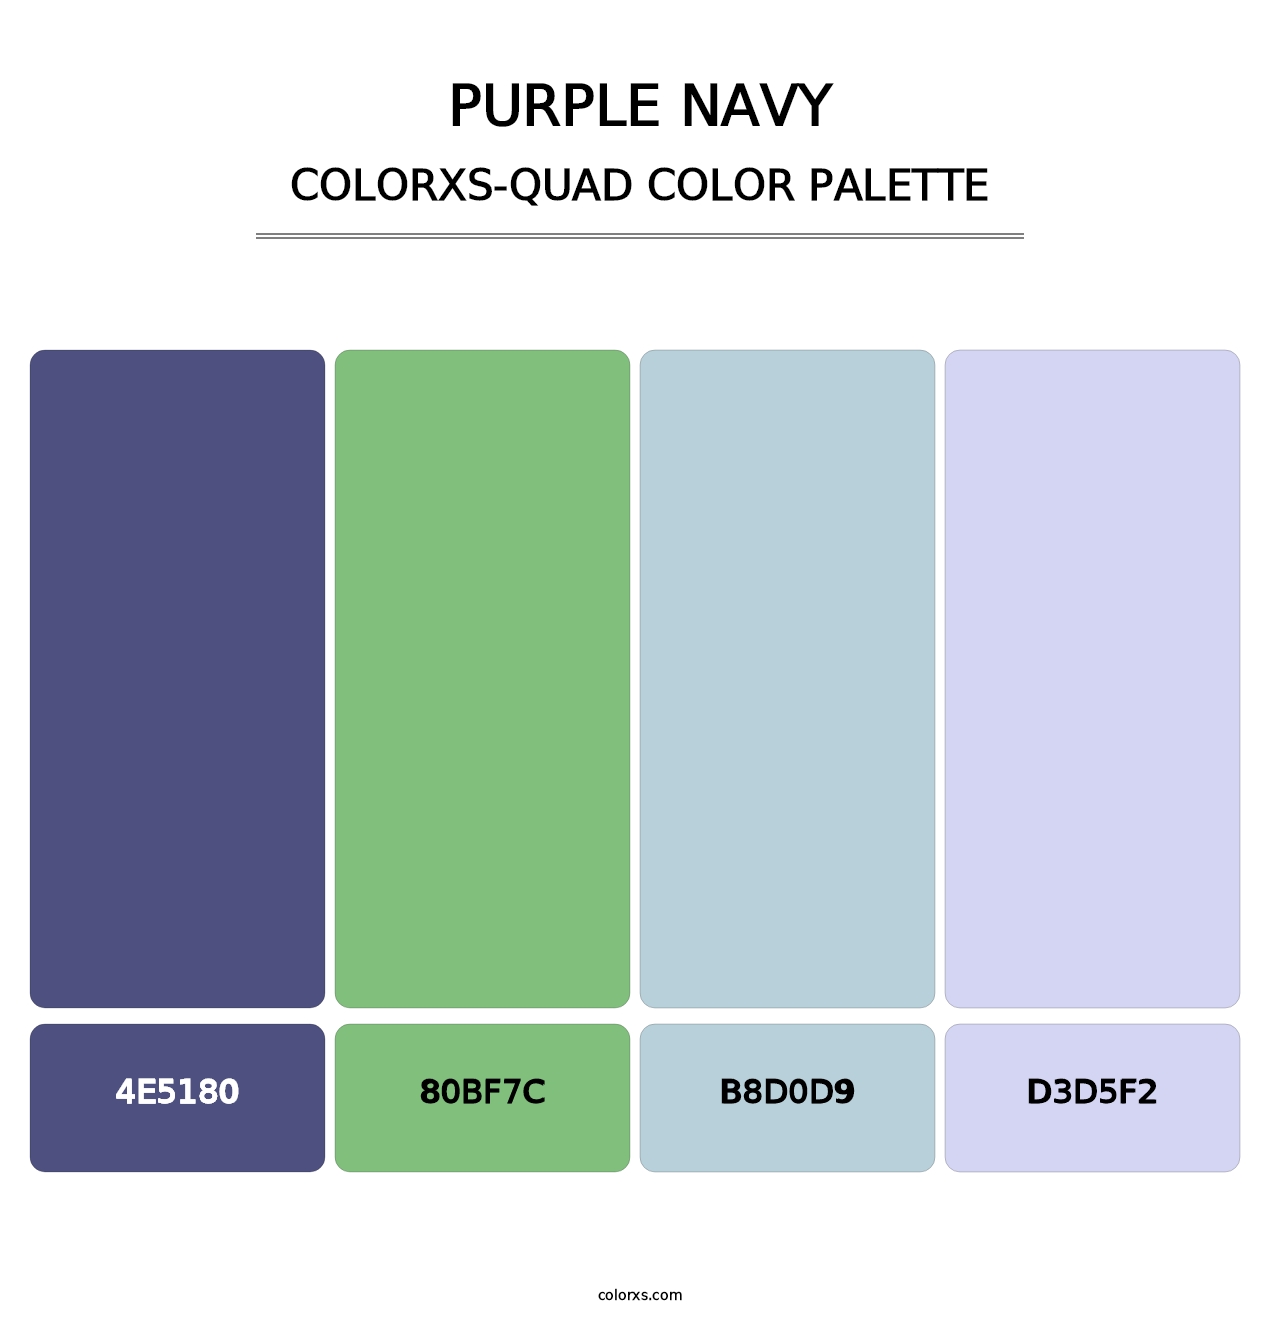 Purple Navy - Colorxs Quad Palette